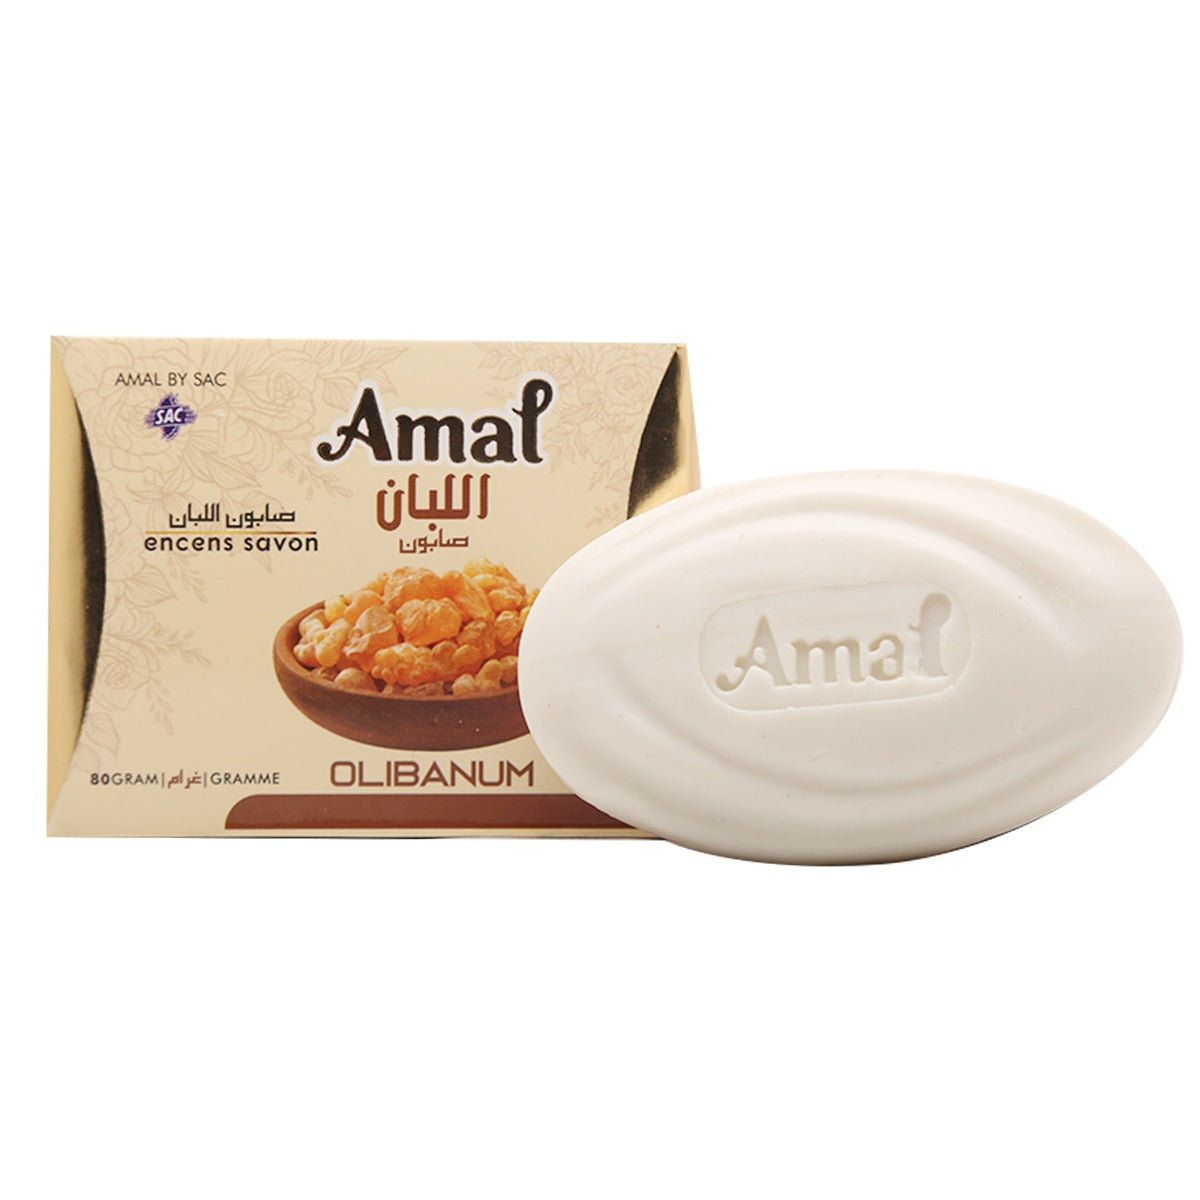 AMAL SOAP 80gm Olibanum Bar For Daily Use